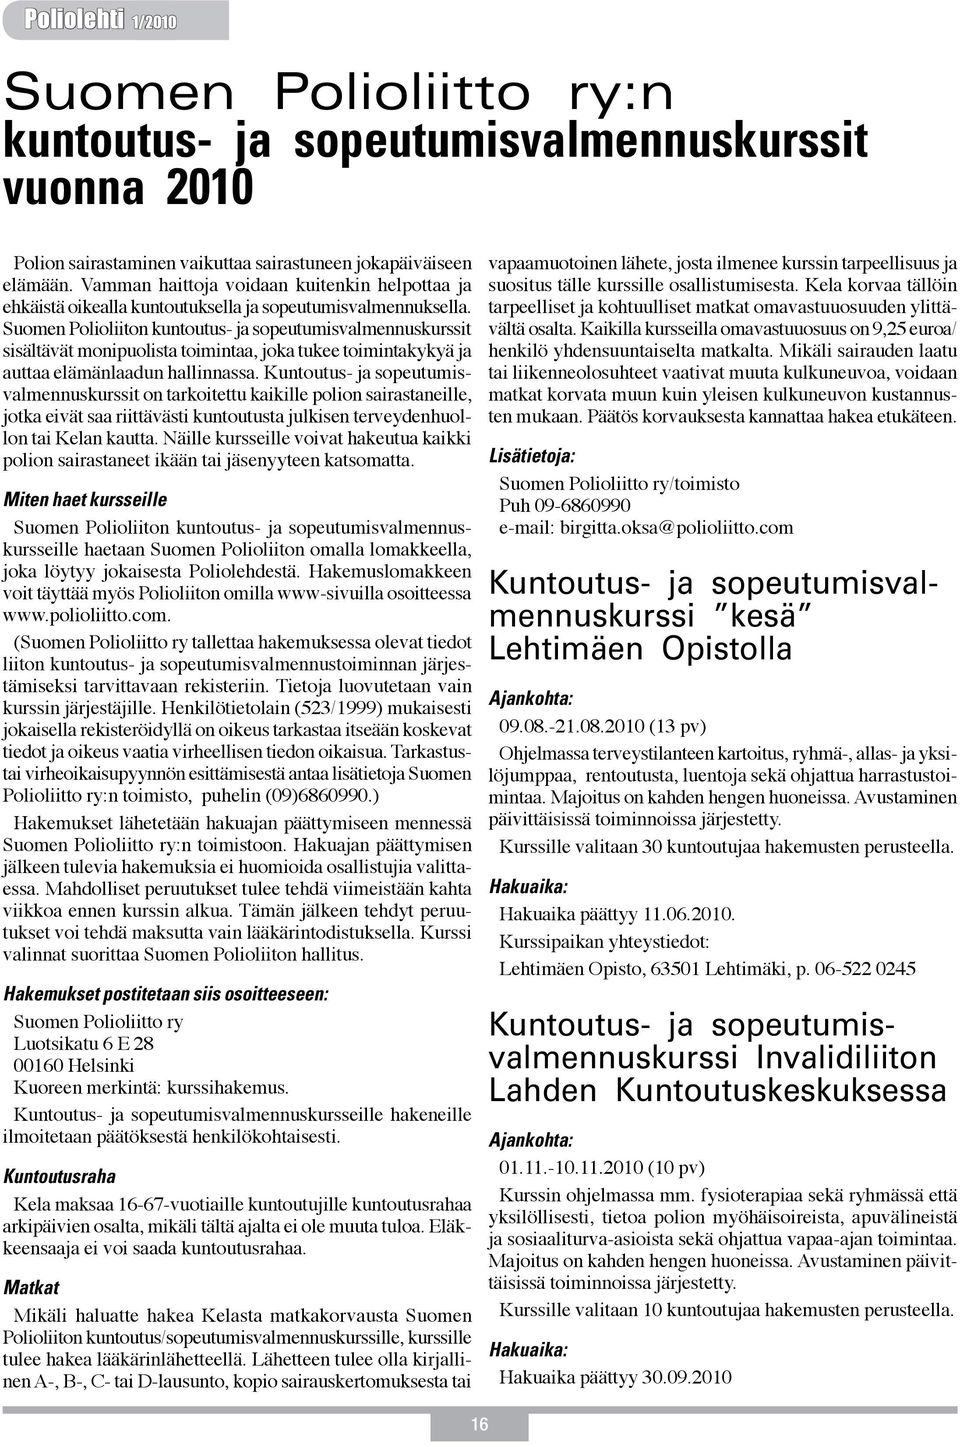 Suomen Polioliiton kuntoutus- ja sopeutumisvalmennuskurssit sisältävät monipuolista toimintaa, joka tukee toimintakykyä ja auttaa elämänlaadun hallinnassa.